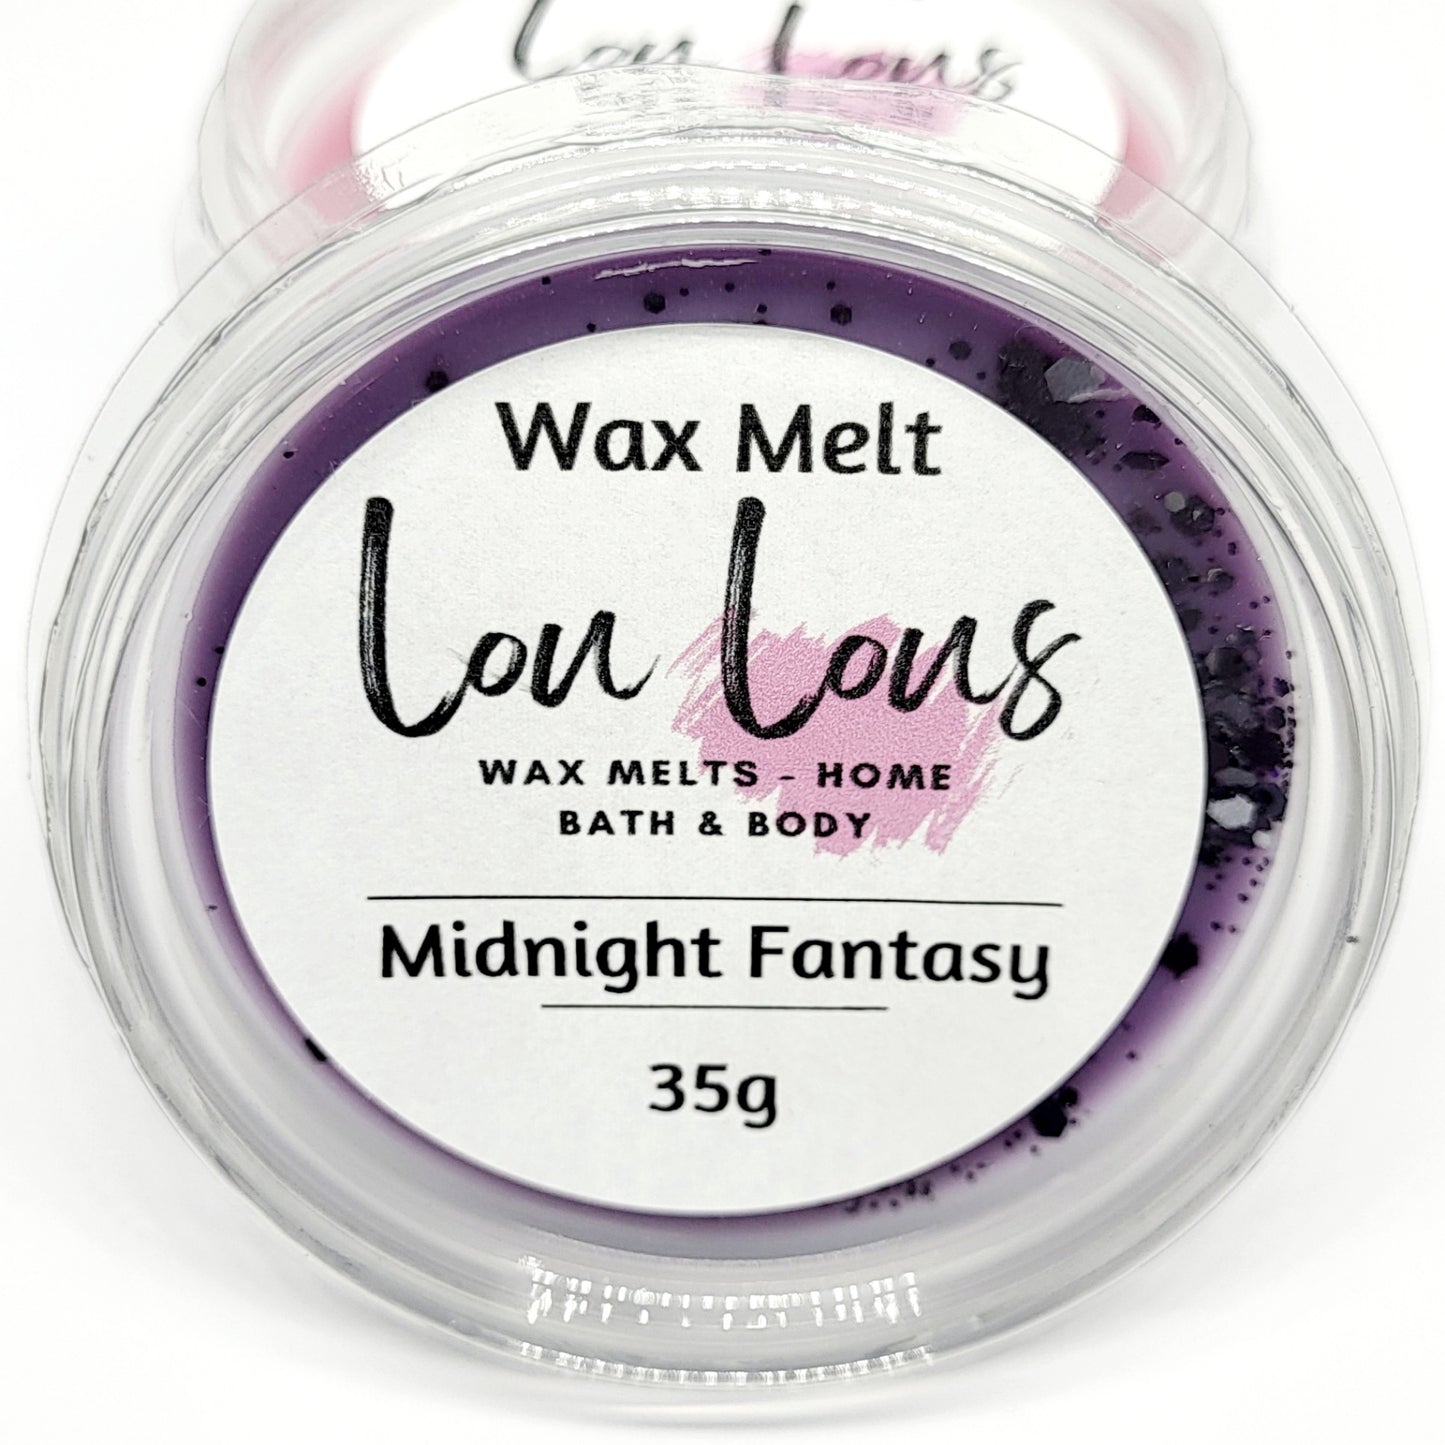 Midnight Fantasy Wax Melt Pot